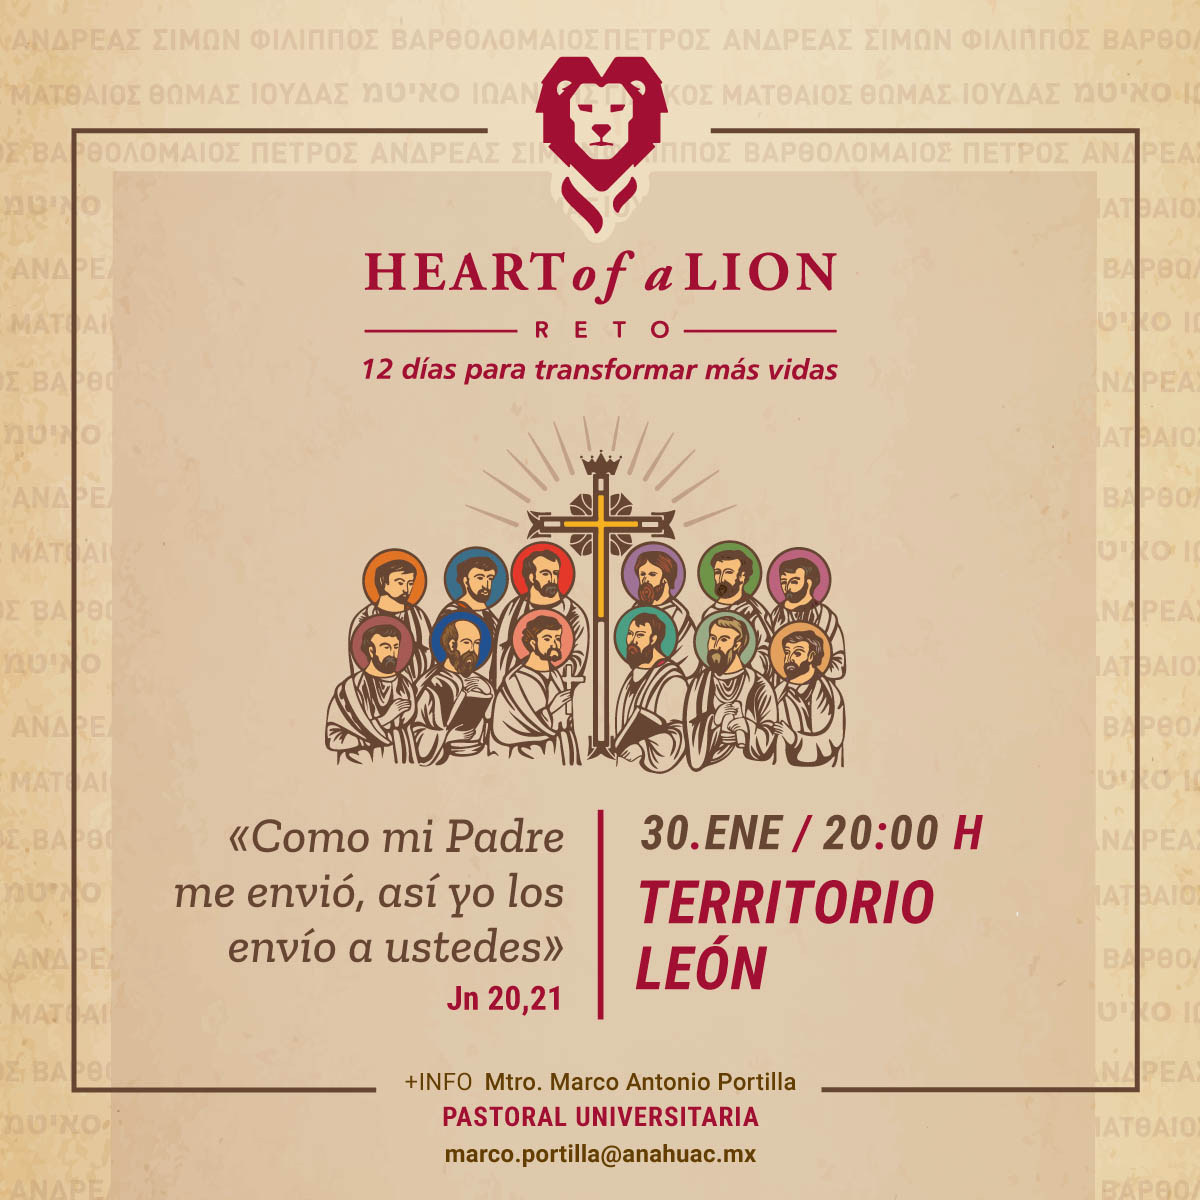 Reto Heart of a Lion: Primera Actividad